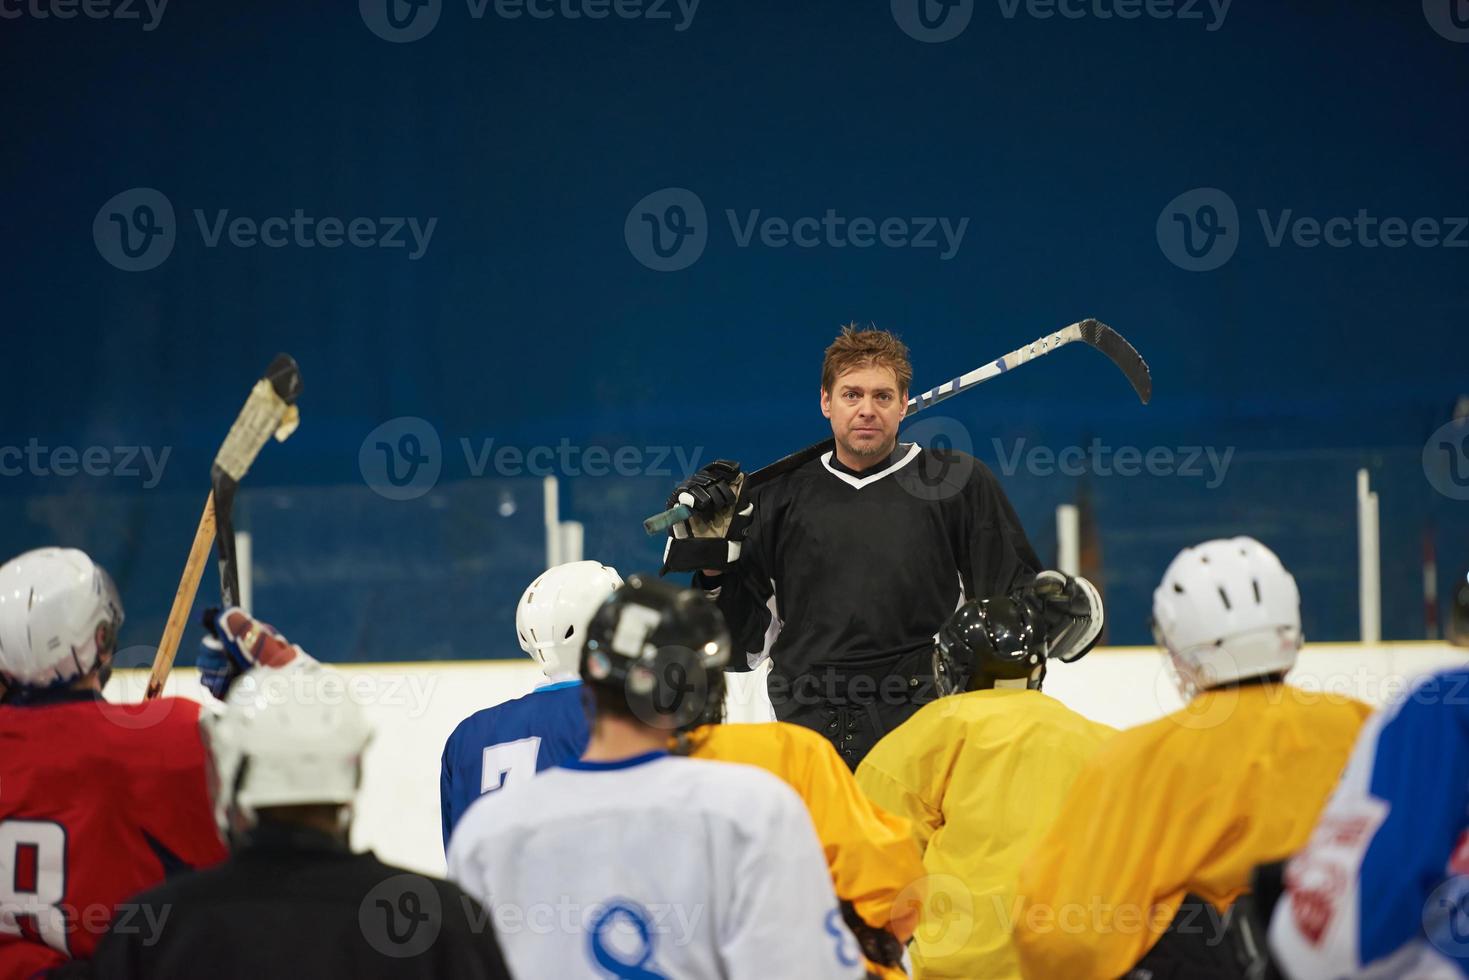 Mannschaftsbesprechung der Eishockeyspieler mit Trainer foto